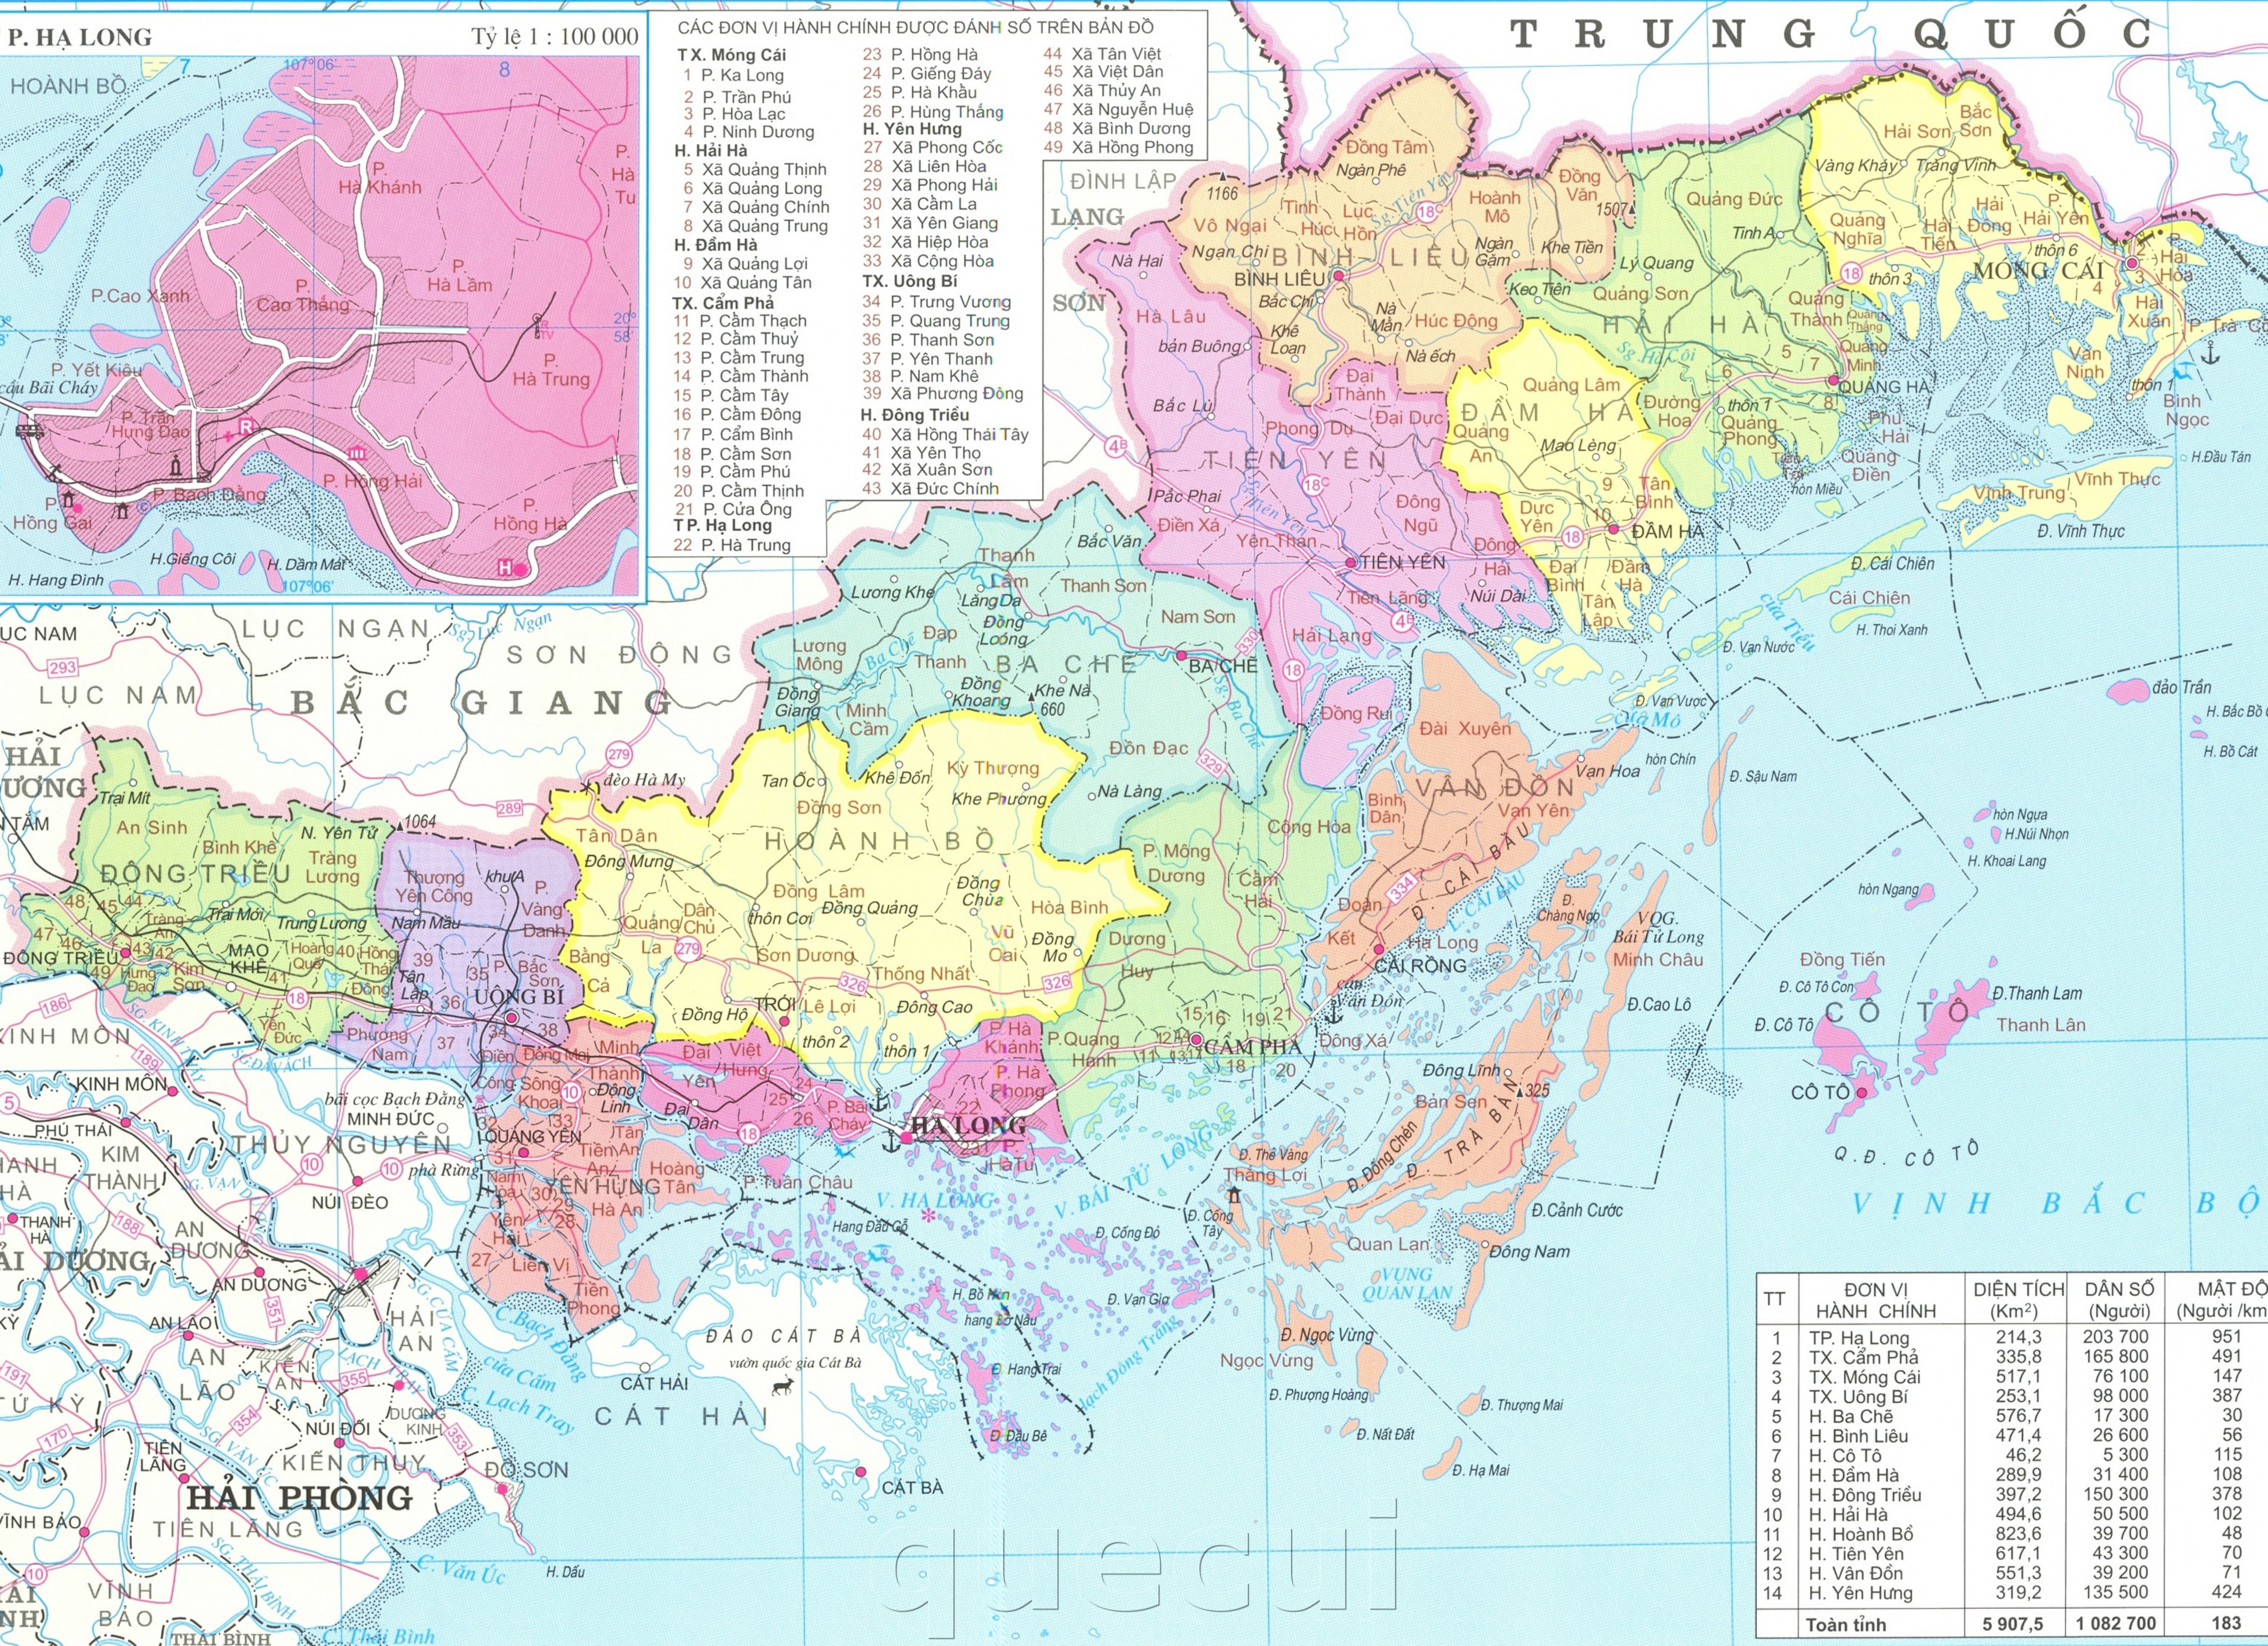 Bản đồ hành chính tỉnh Quảng Ninh năm 2024 là một công cụ hữu ích để khám phá đất nước và khám phá cảnh quan đẹp của Việt Nam. Với sự phát triển đáng kinh ngạc của tỉnh, bản đồ mang đến cho bạn một cái nhìn tổng quan về khả năng và tài nguyên của Quảng Ninh.